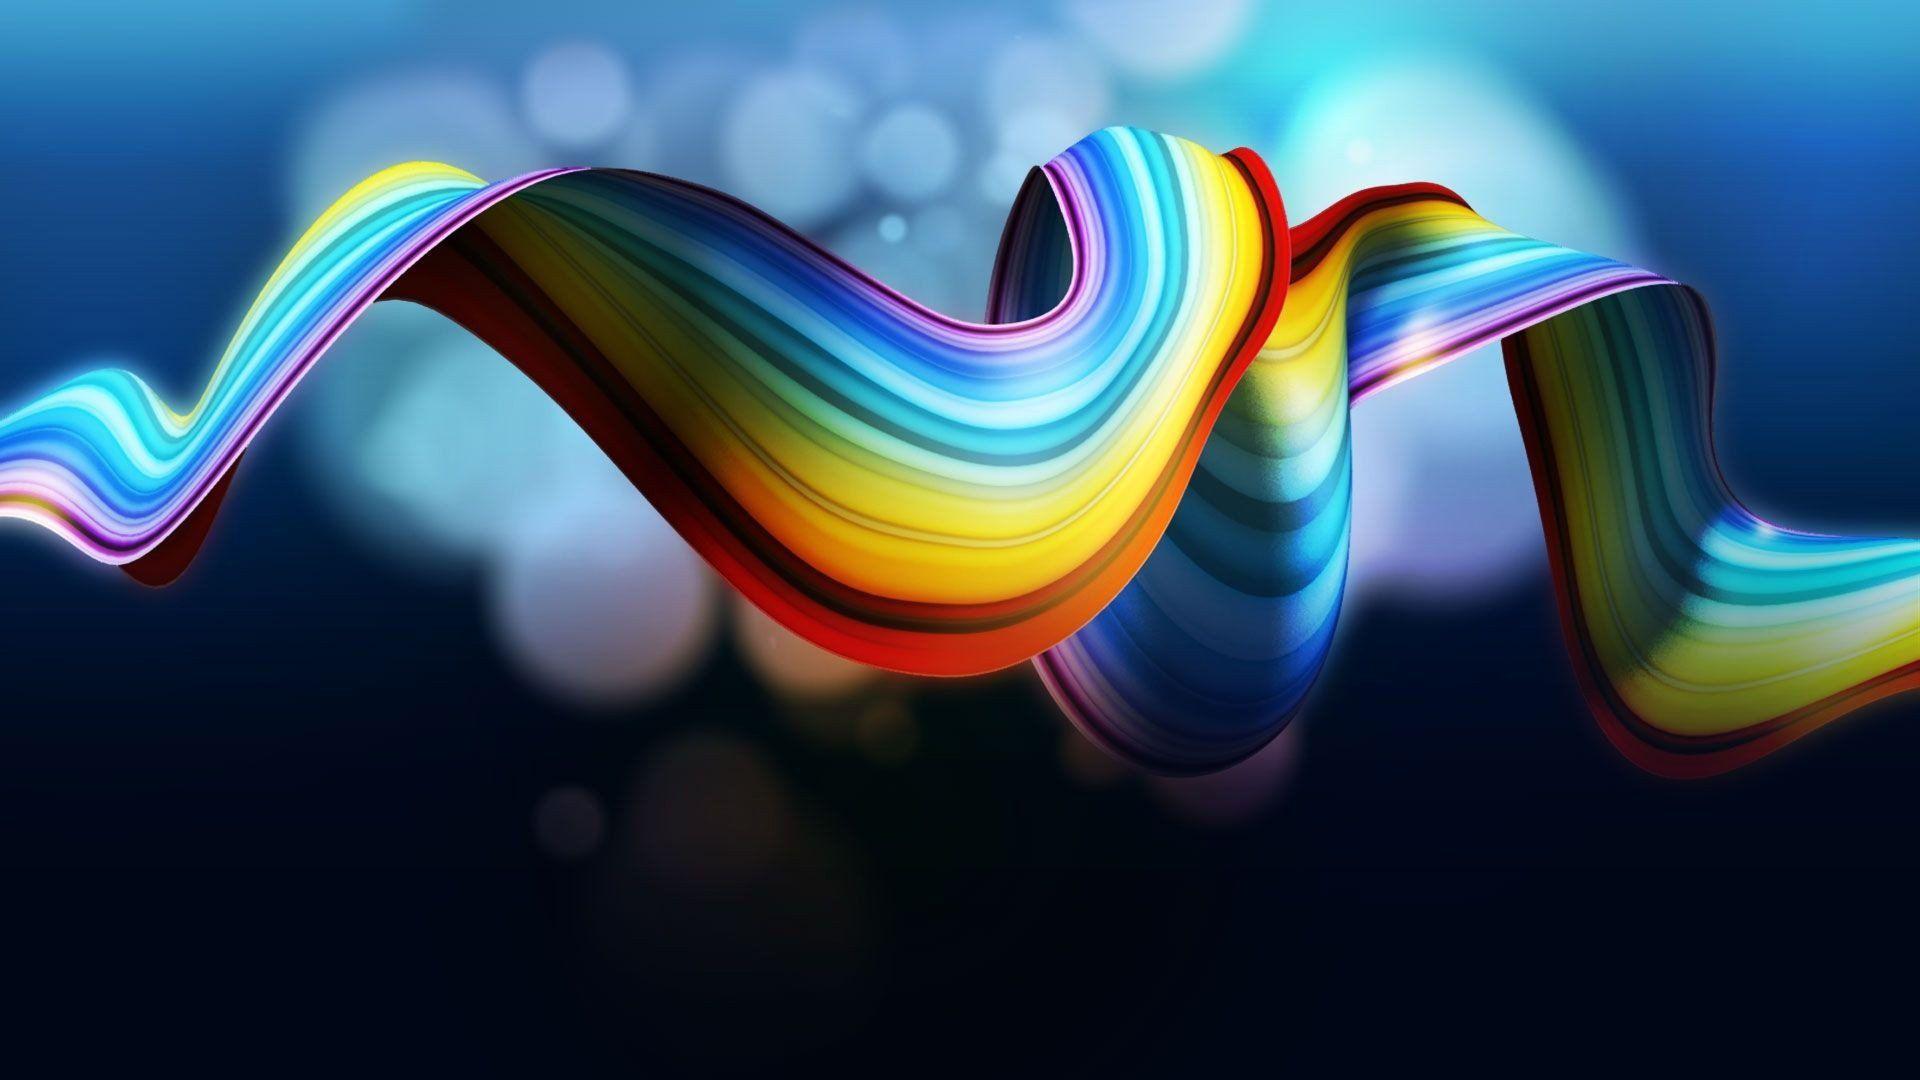 Satisfying Rainbow HD Wallpapers - Top Free Satisfying ...